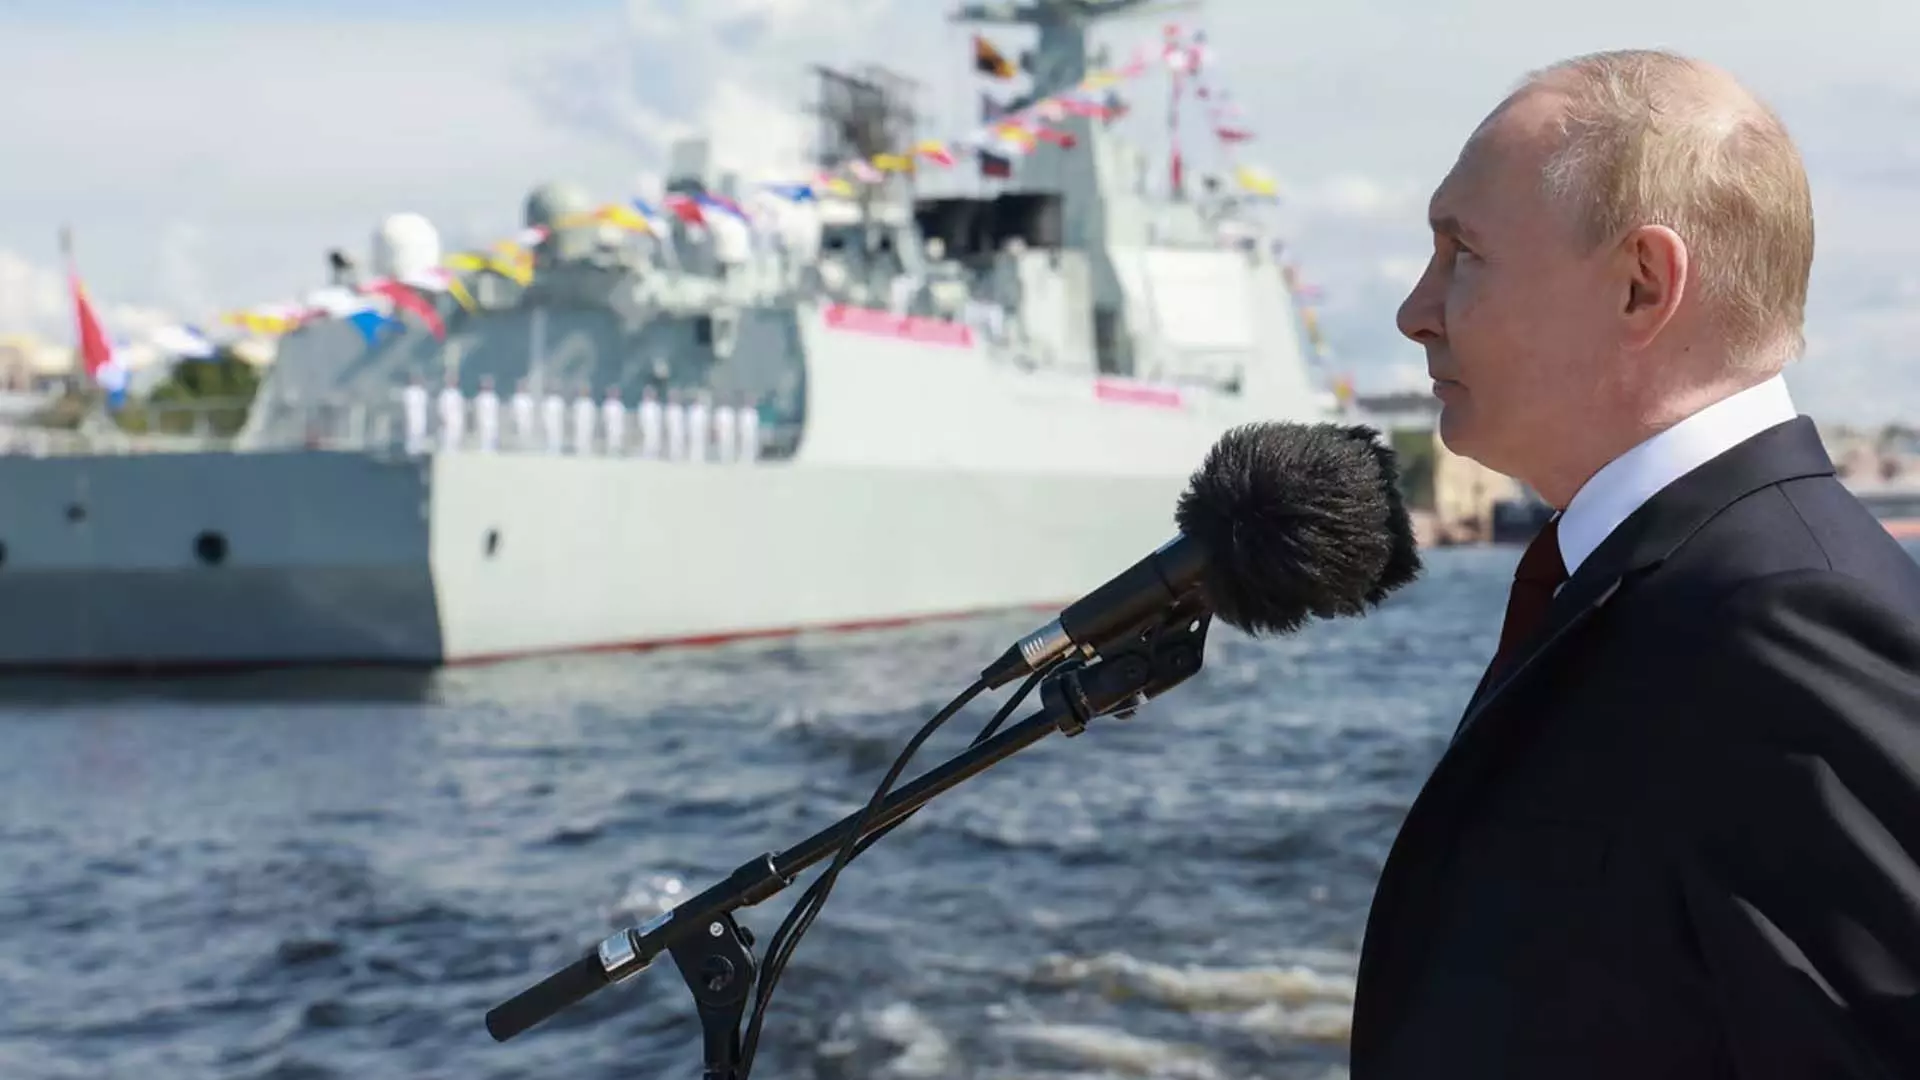 Russian राष्ट्रपति पुतिन ने जर्मनी में अमेरिकी मिसाइलों के जवाब में प्रतिबिंबित उपाय करने का संकल्प लिया